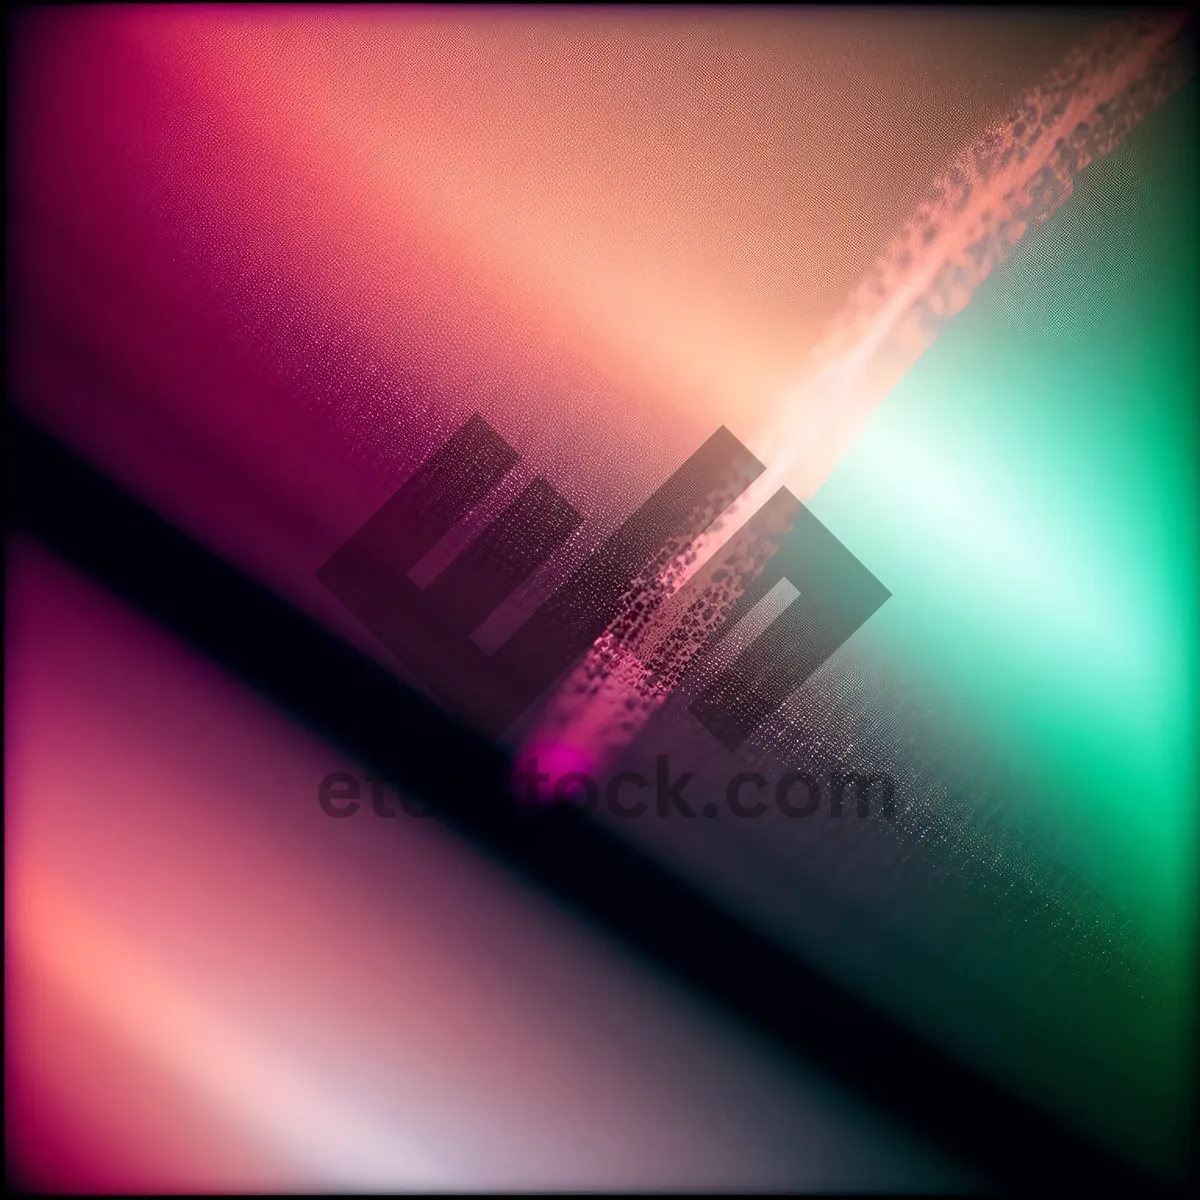 Picture of Futuristic Fractal Laser Design: Vibrant Light-Emitting Diode Art